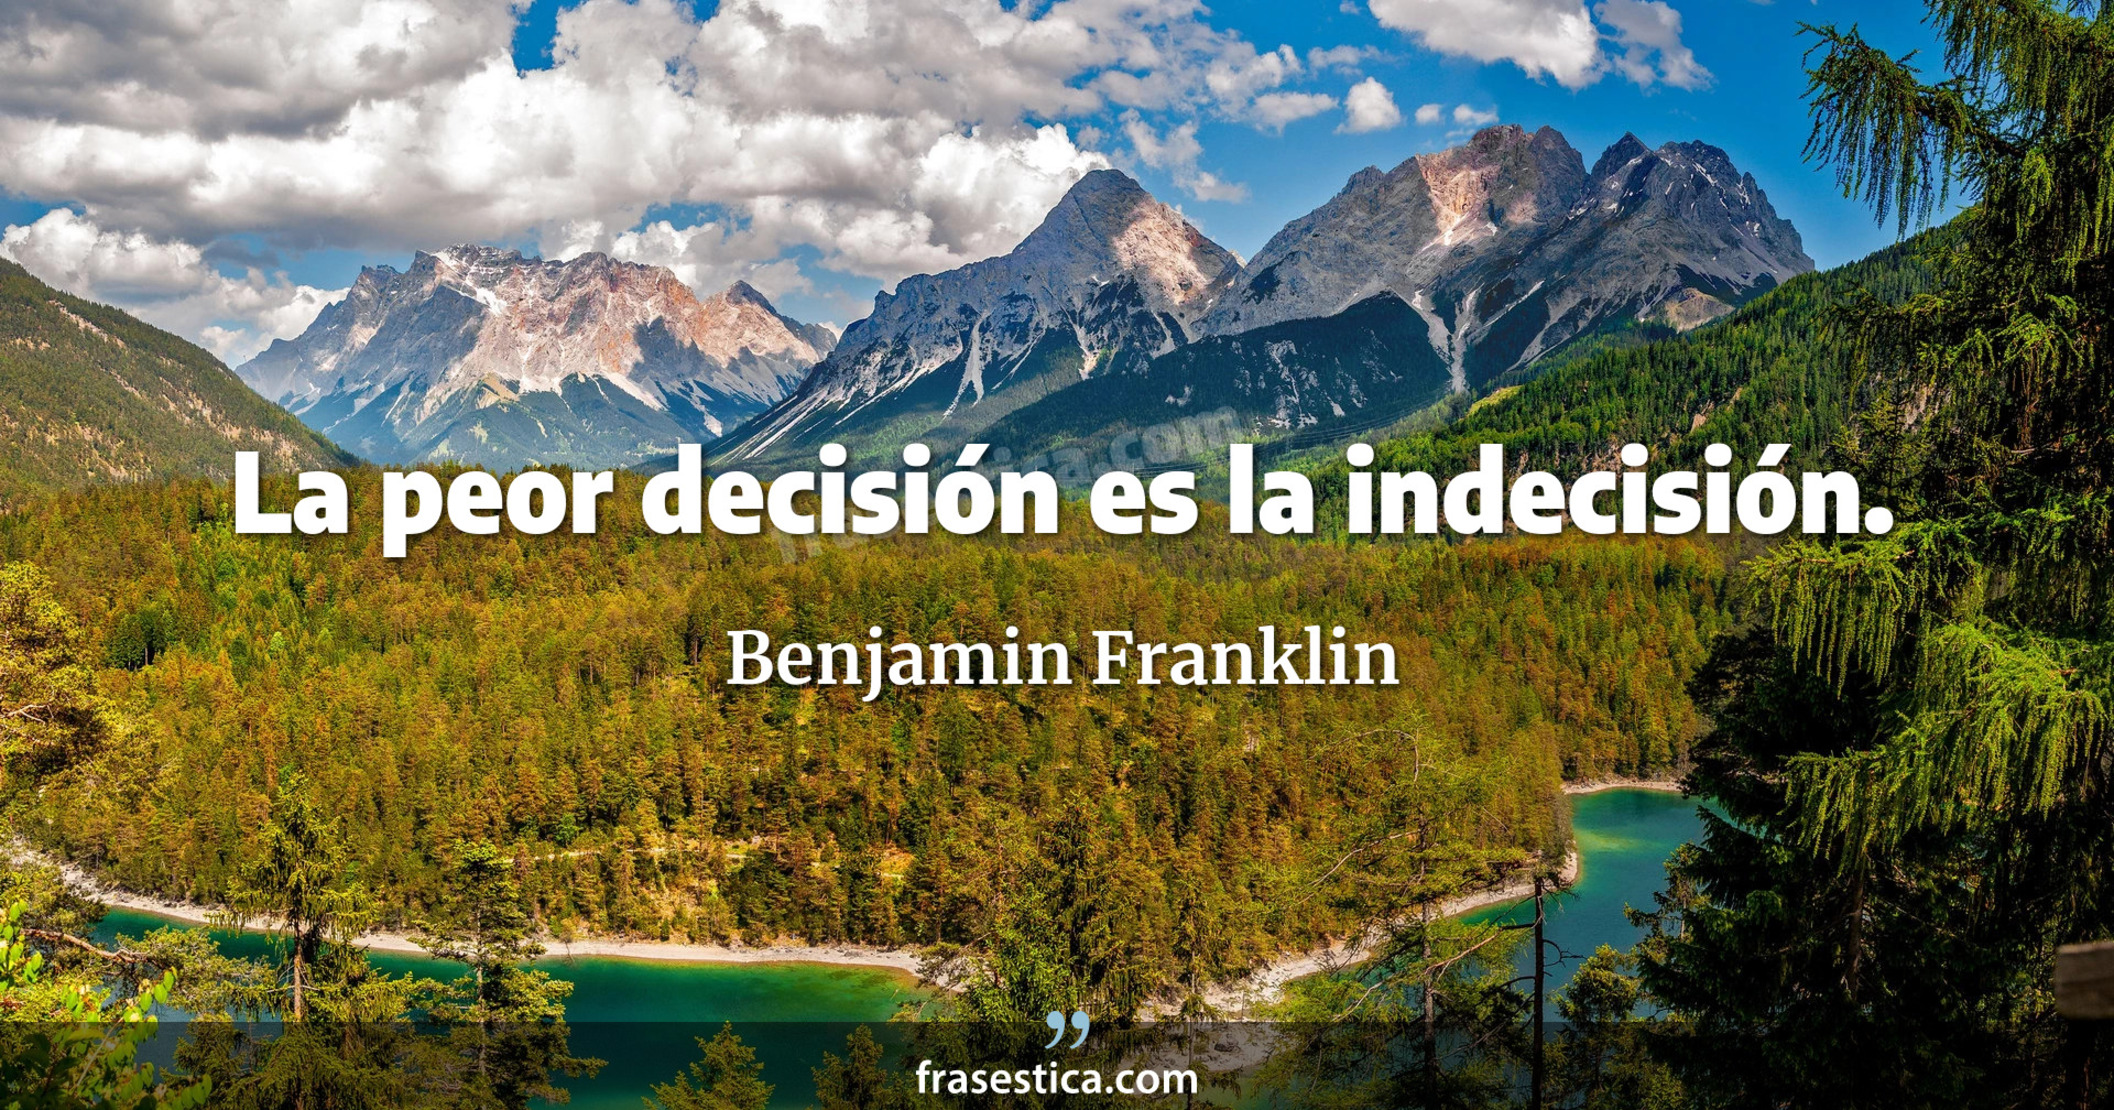 La peor decisión es la indecisión. - Benjamin Franklin